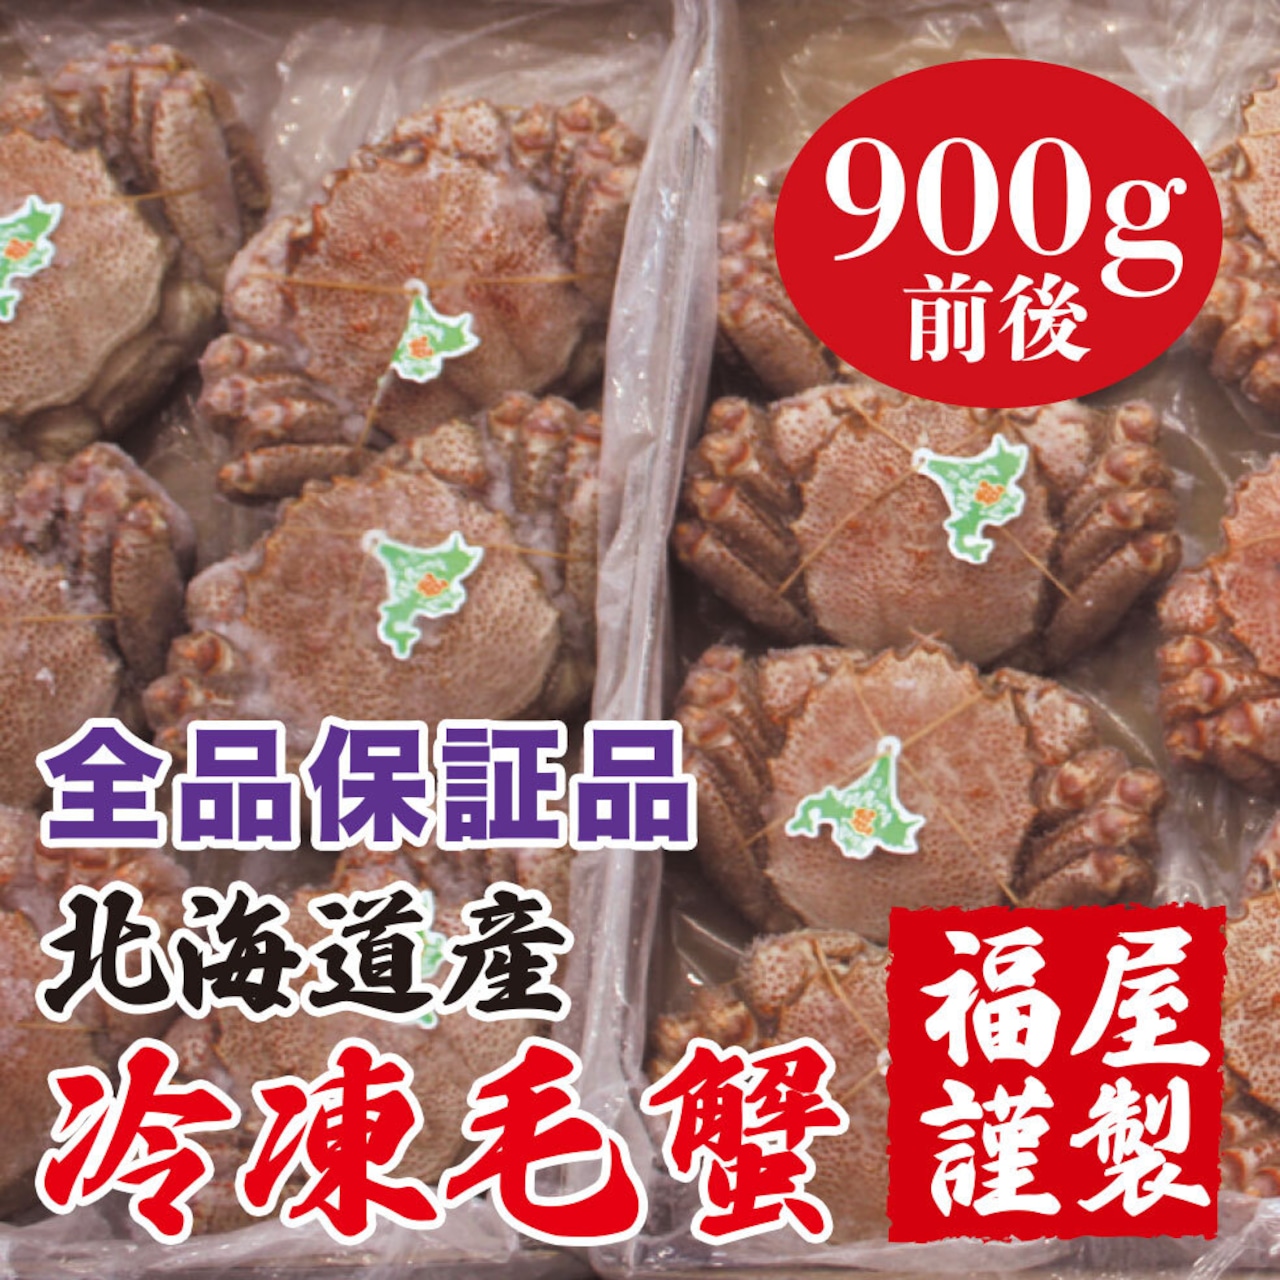 北海道産 冷凍毛蟹 全品保証品 900g前後1尾